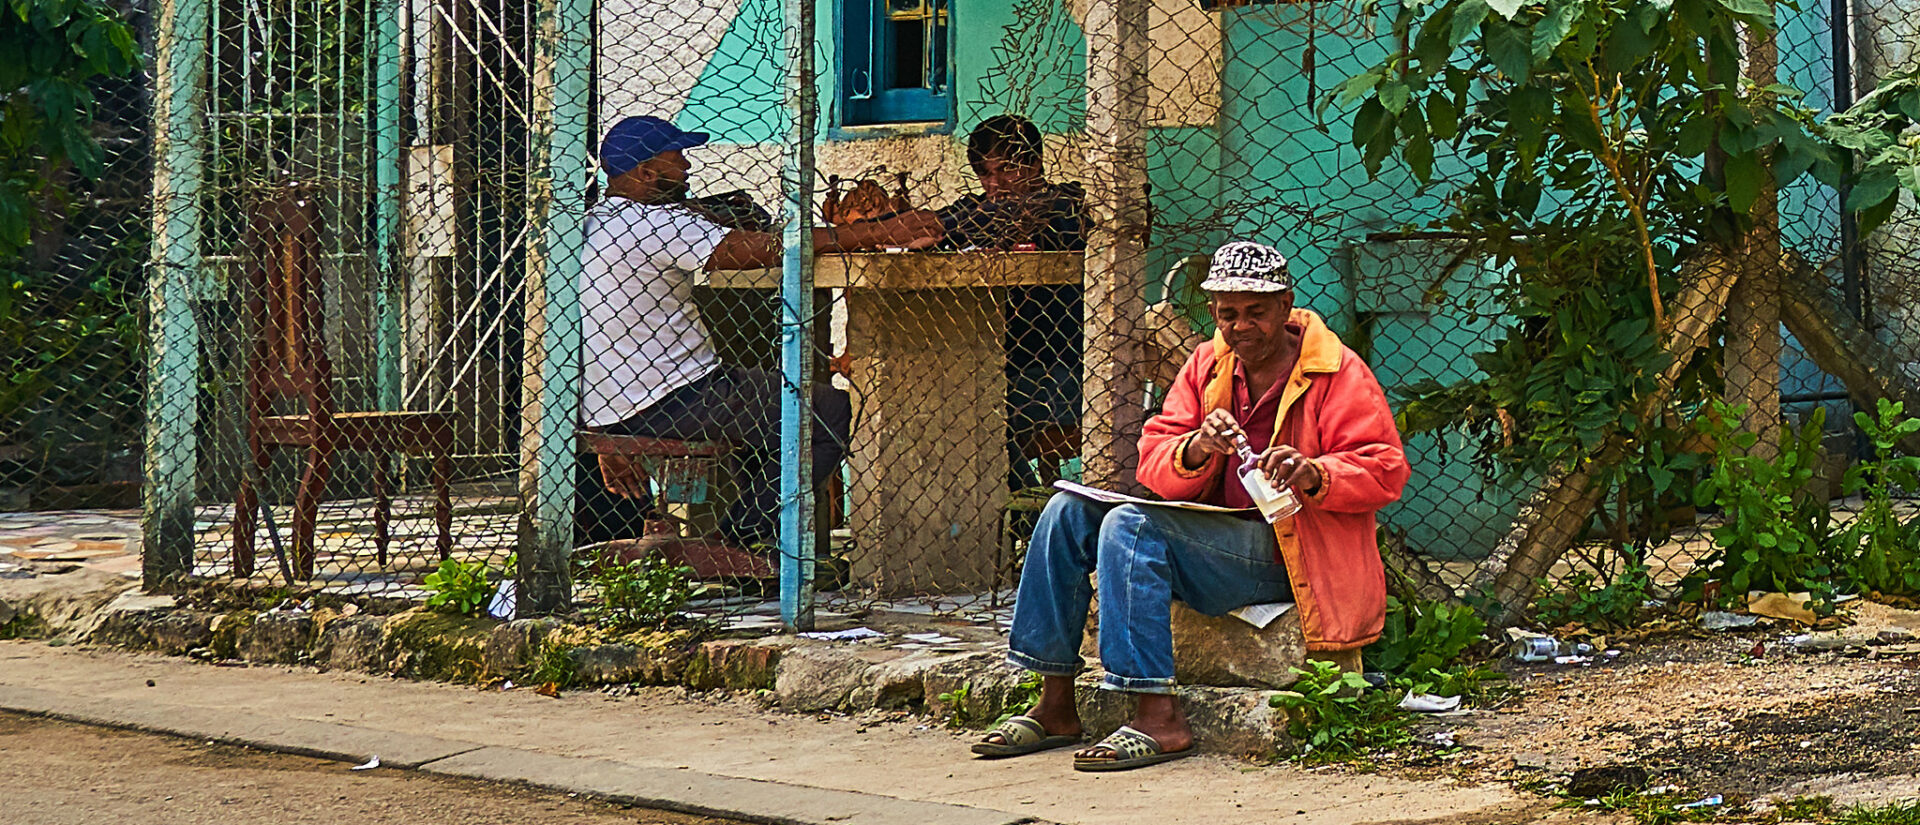 Les conditions de vie des Cubains se sont encore dégradées avec la pandémie | © Pedro Szekely/Flickr/CC BY-SA 2.0